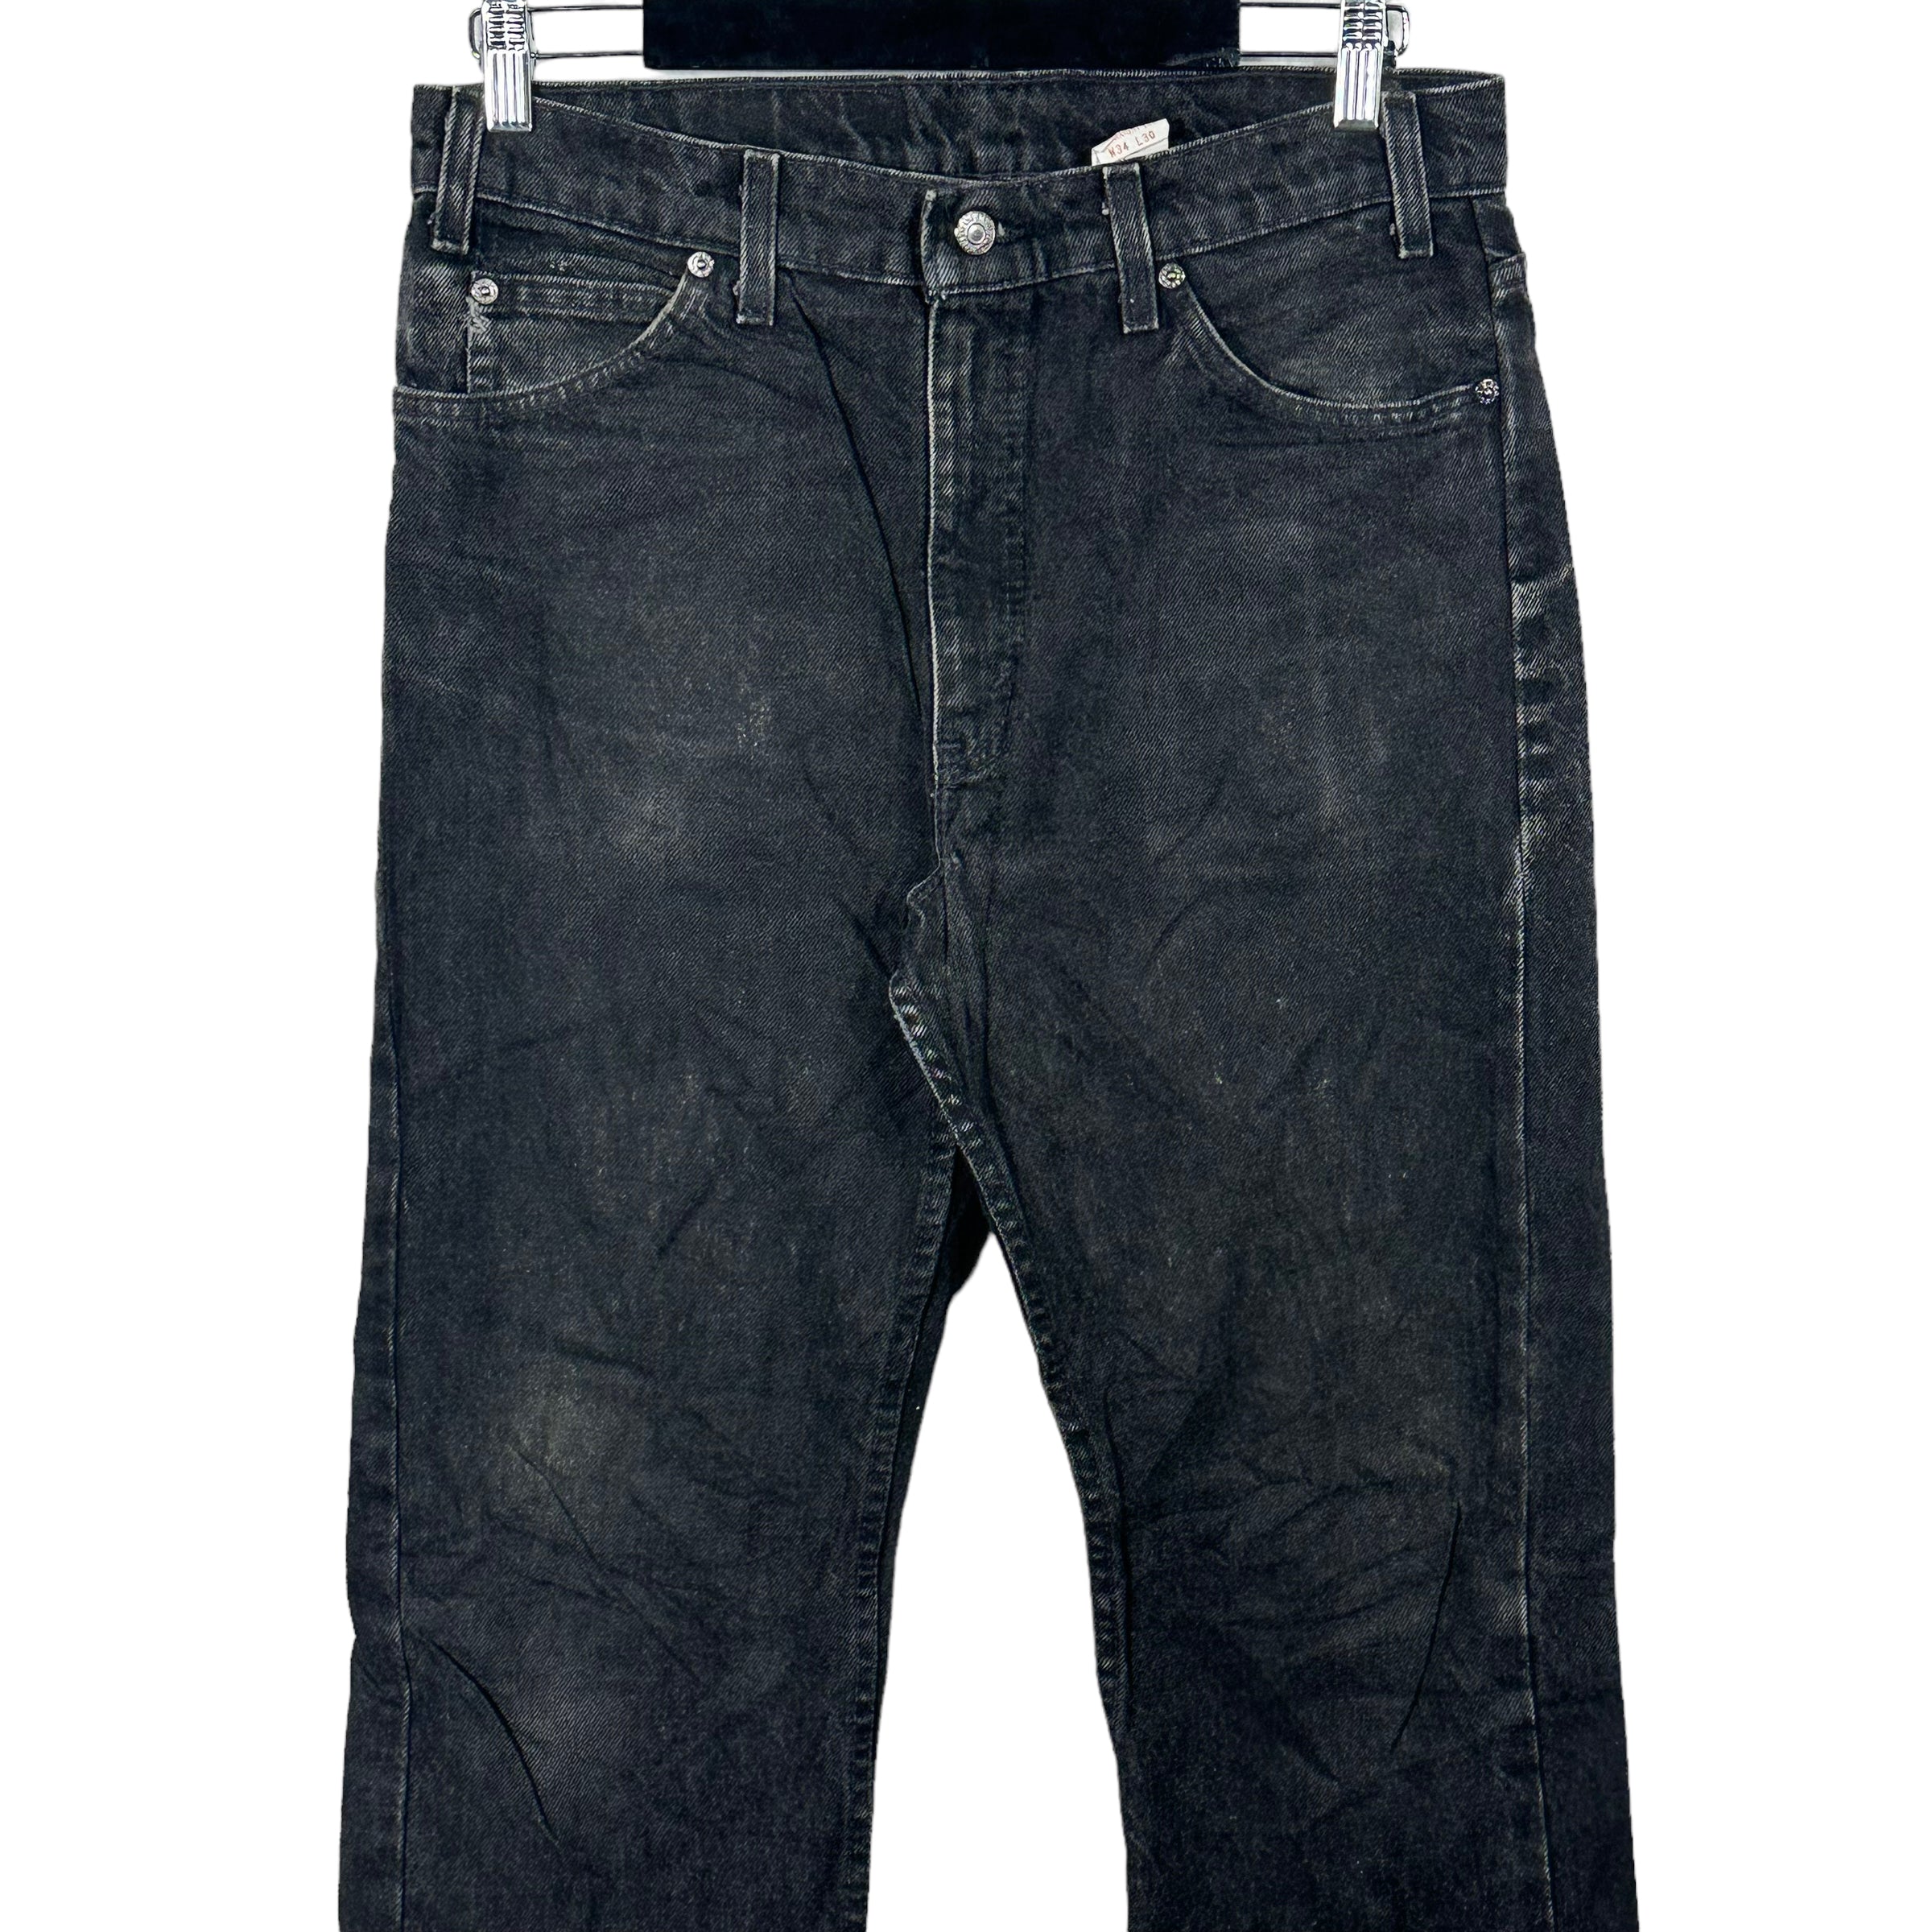 Vintage Levis 505 Jeans